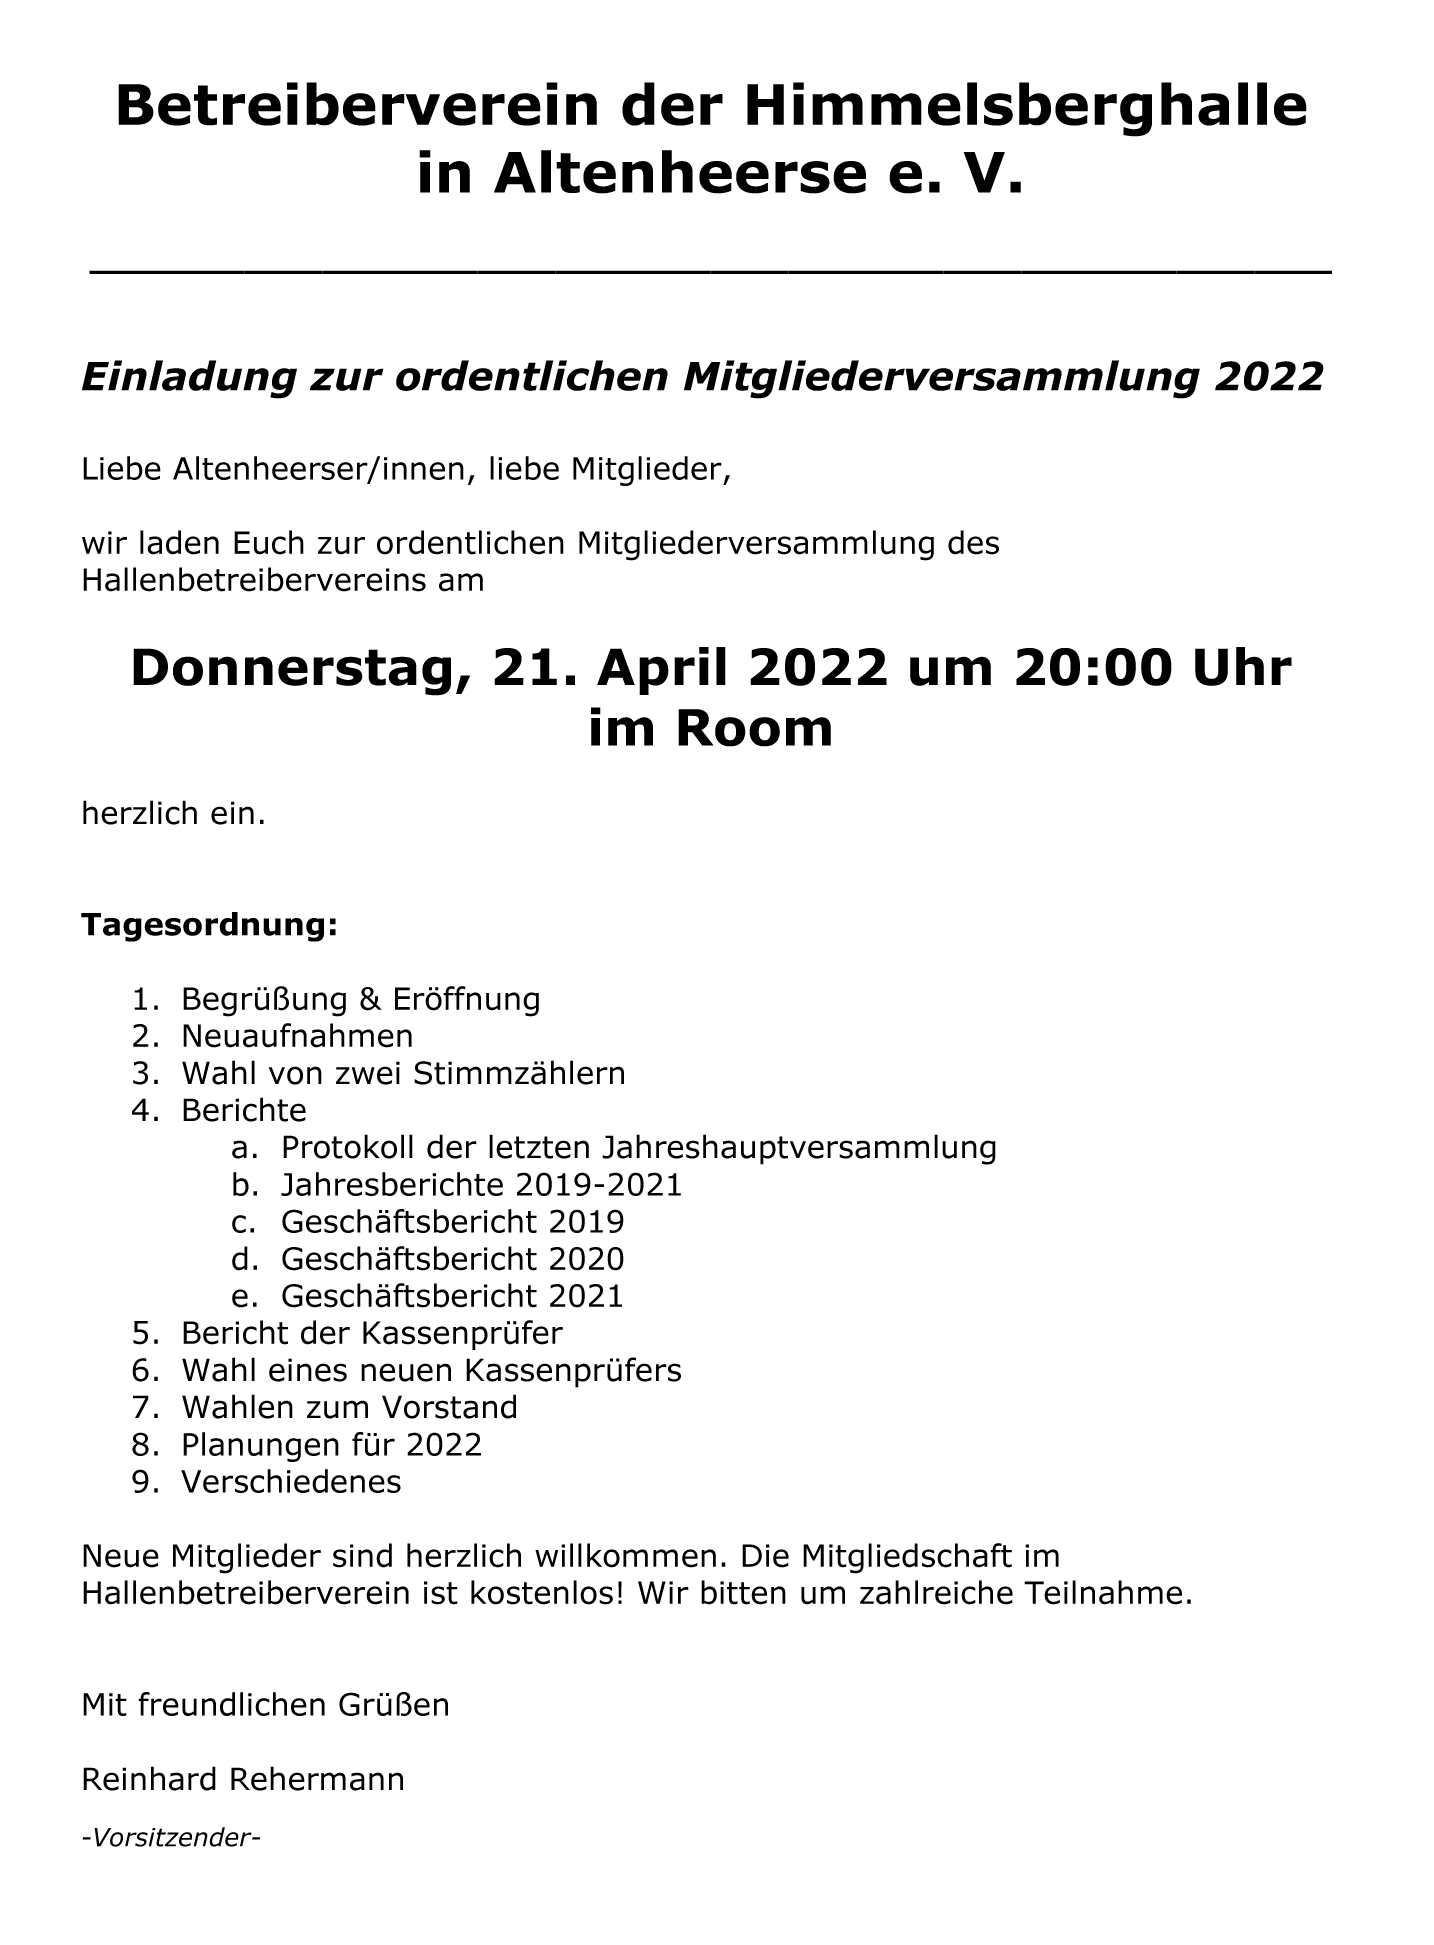 Einladung zur ordentlichen Mitgliederversammlung 2022